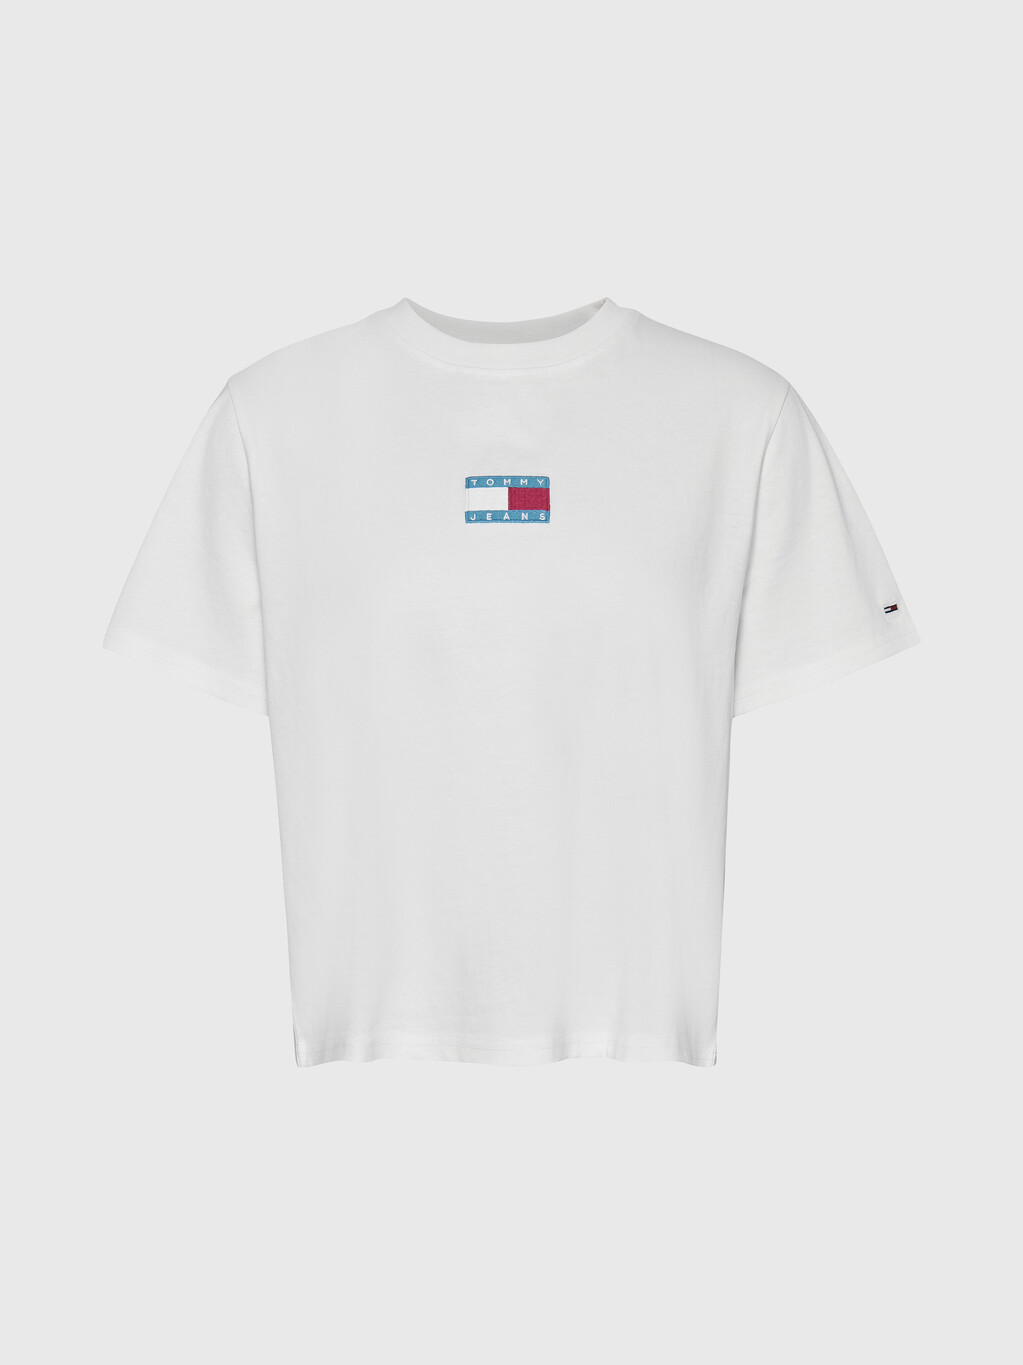 徽章經典版型平紋 T 恤, White, hi-res